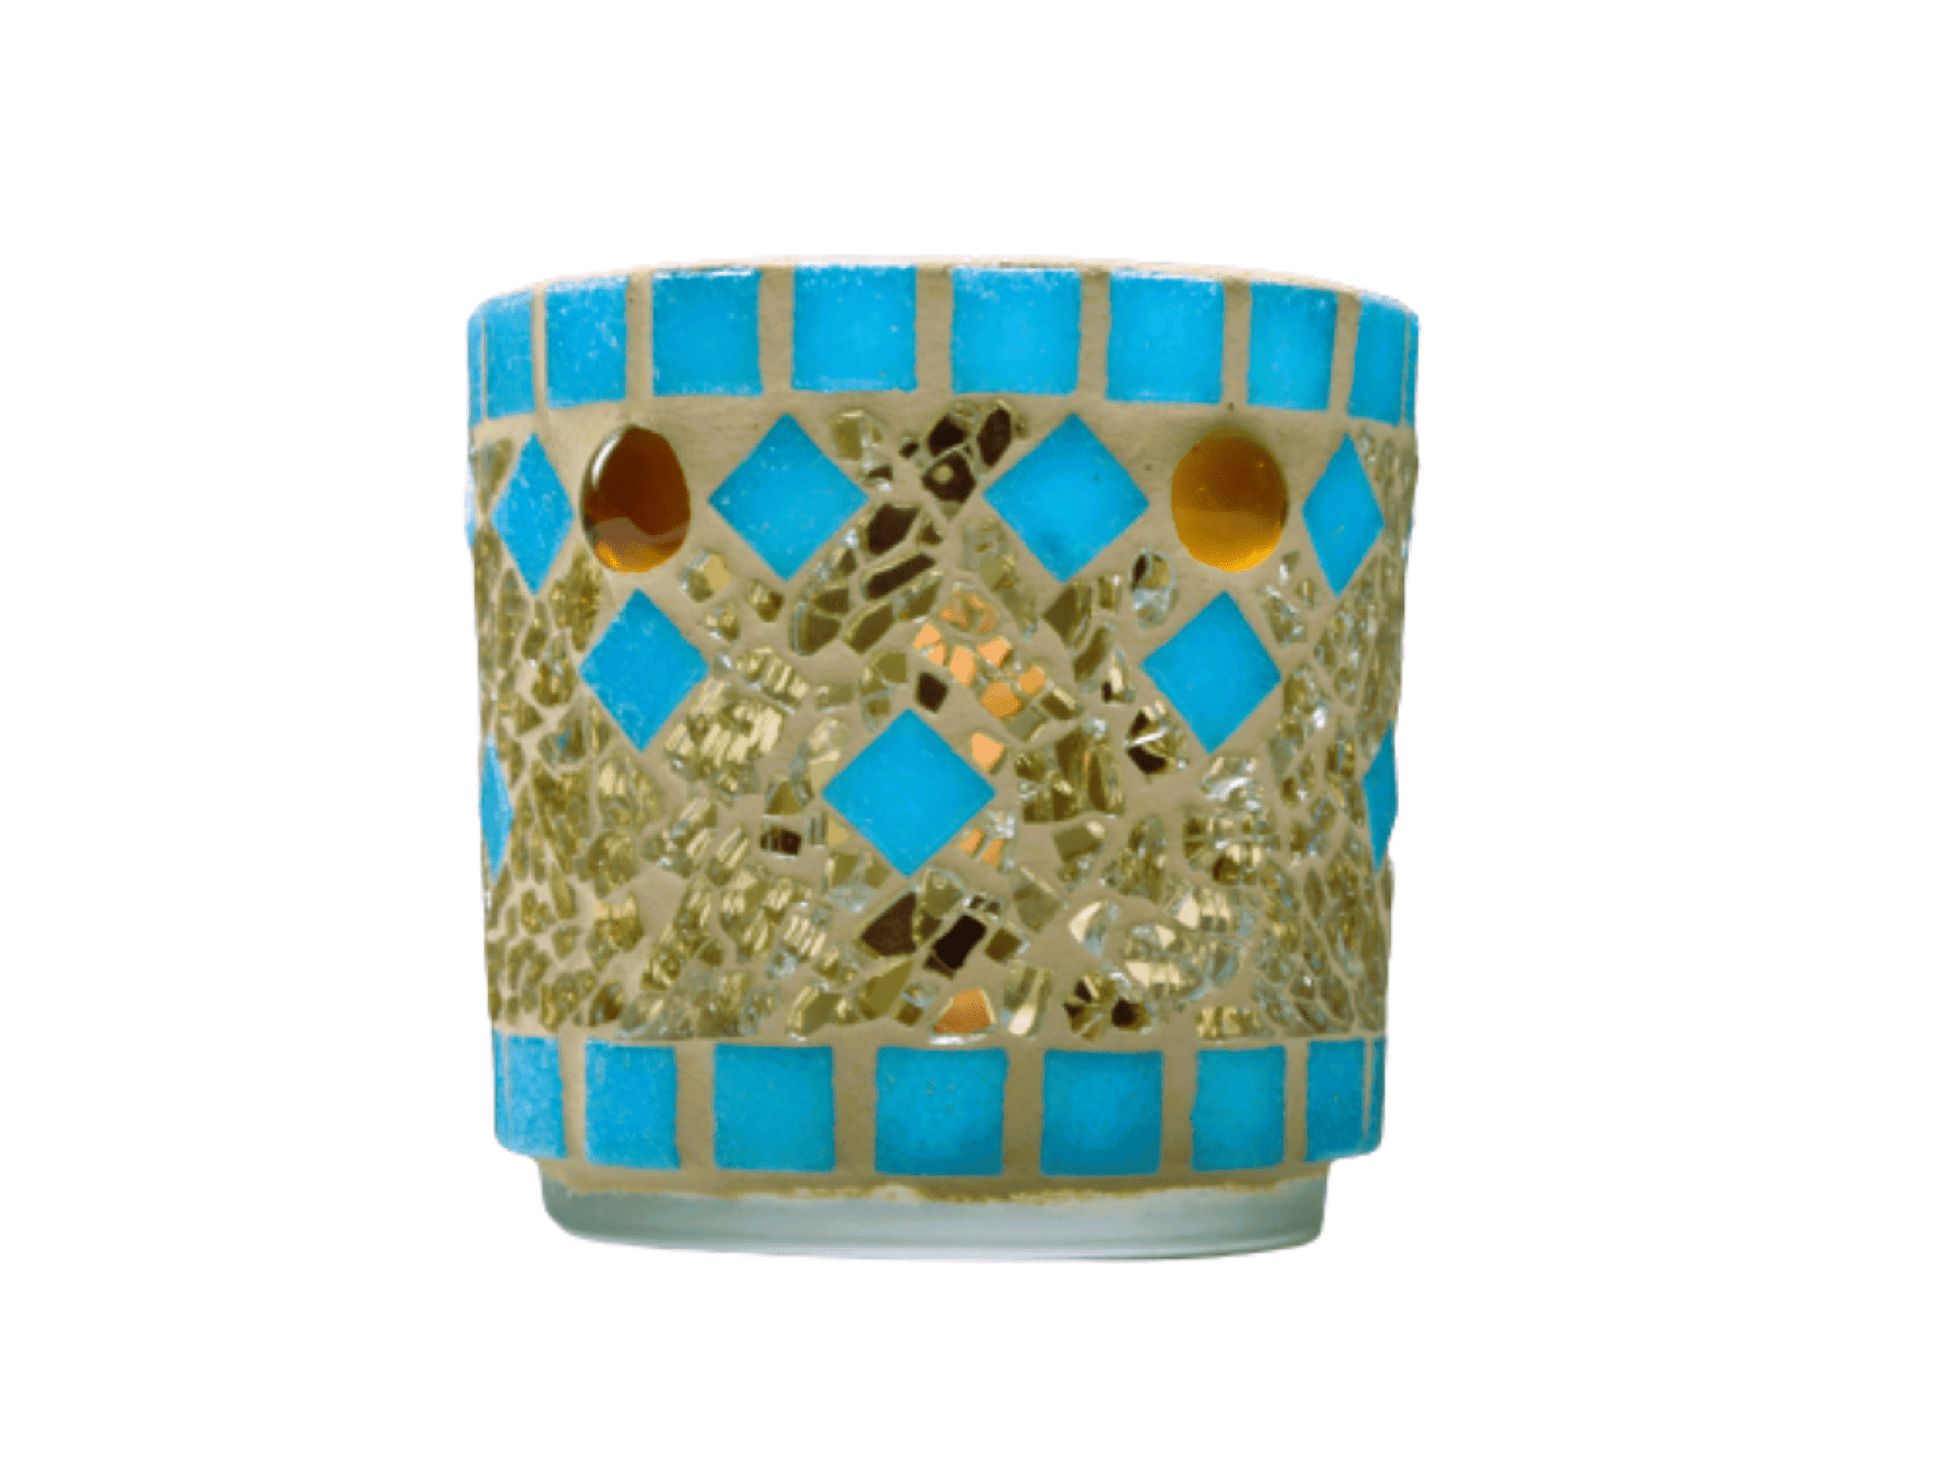 Mosaik Windlicht türkis gold 7 cm hoch - handgemacht - Mosaikkasten aus alt mach neu dekoidee